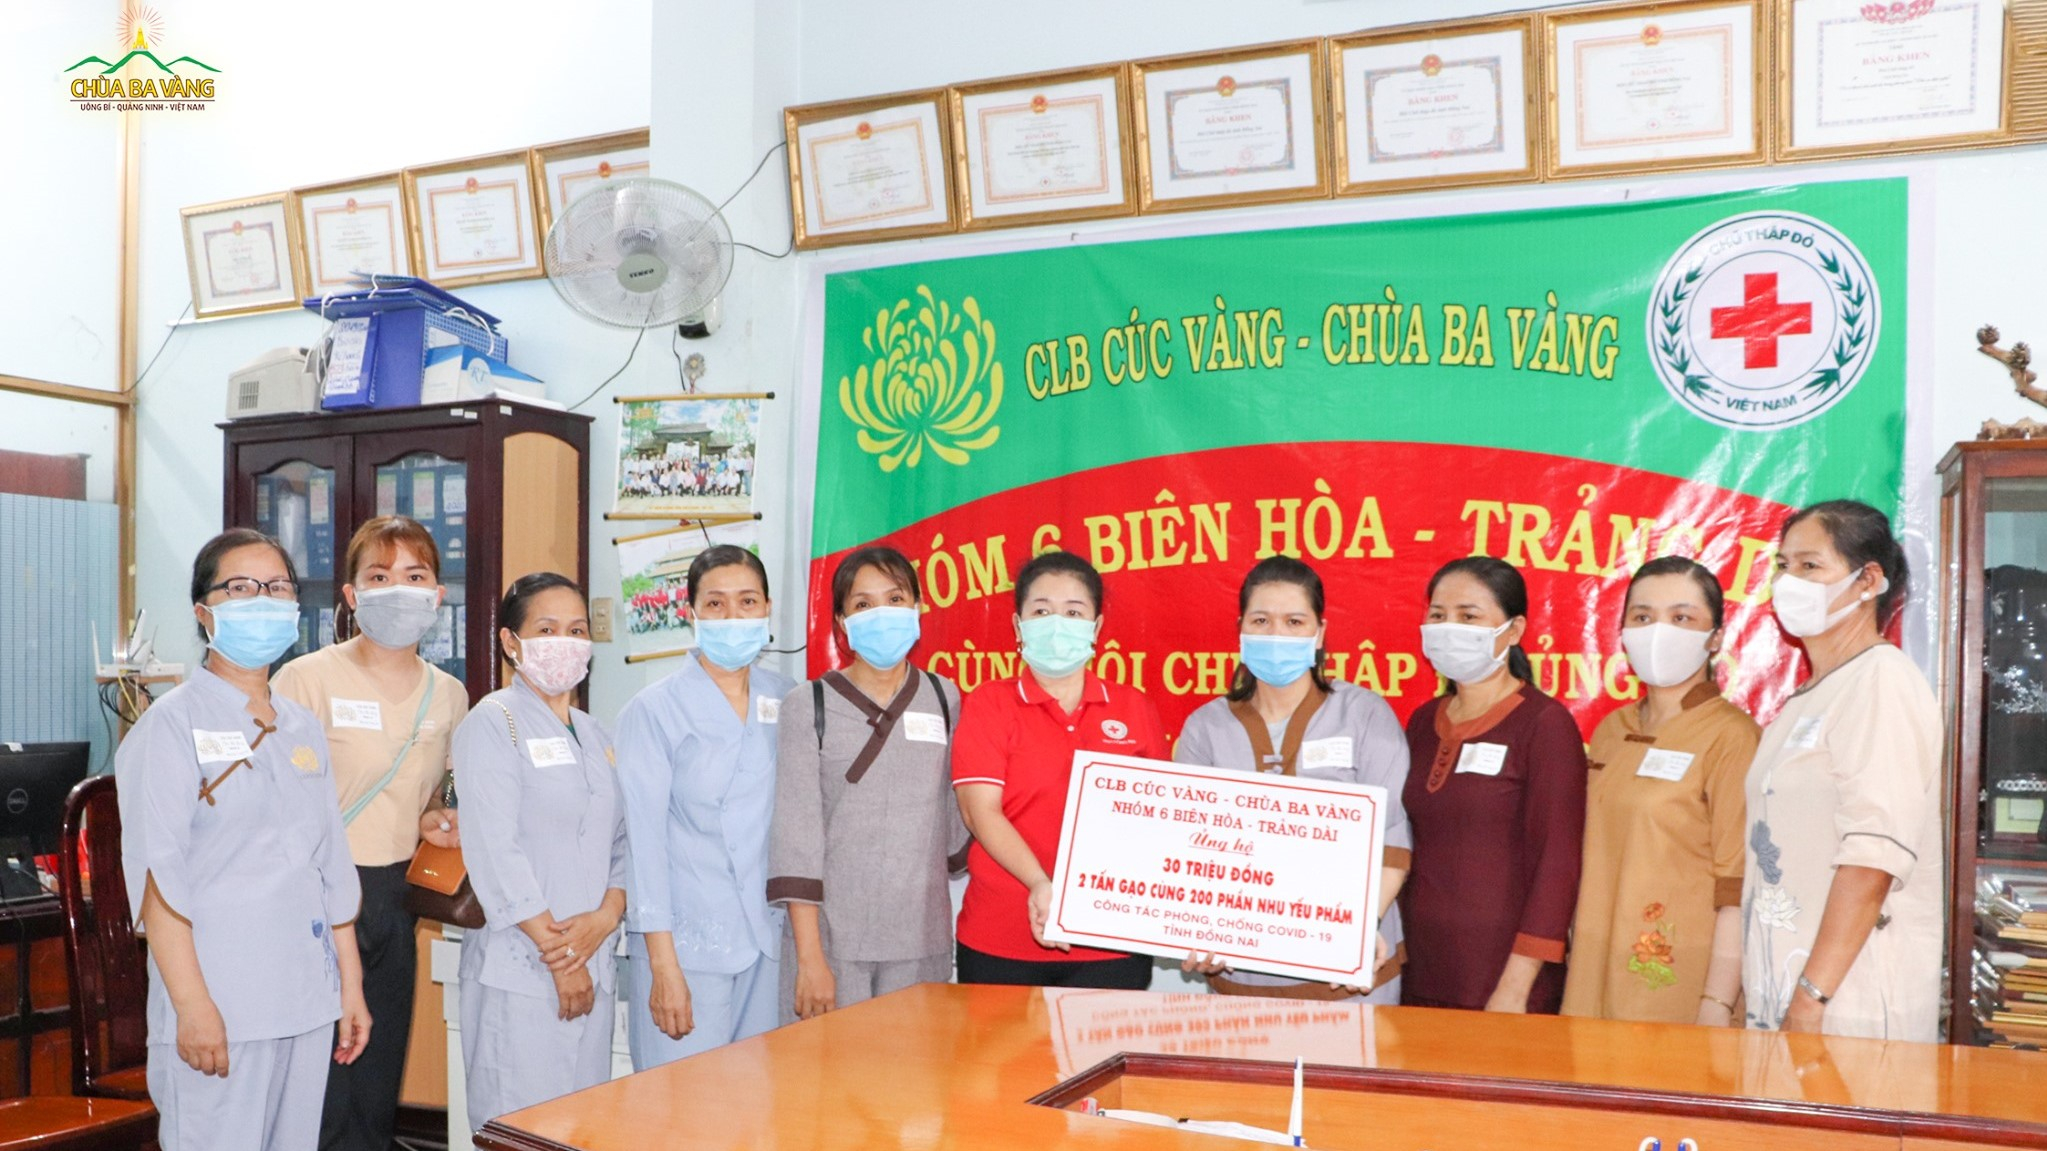 Đại diện các Phật tử chùa Ba Vàng cùng Hội Chữ Thập Đỏ trao tặng 30 triệu đồng, ủng hộ cho các hộ dân có hoàn cảnh khó khăn trên địa bàn tỉnh Đồng Nai